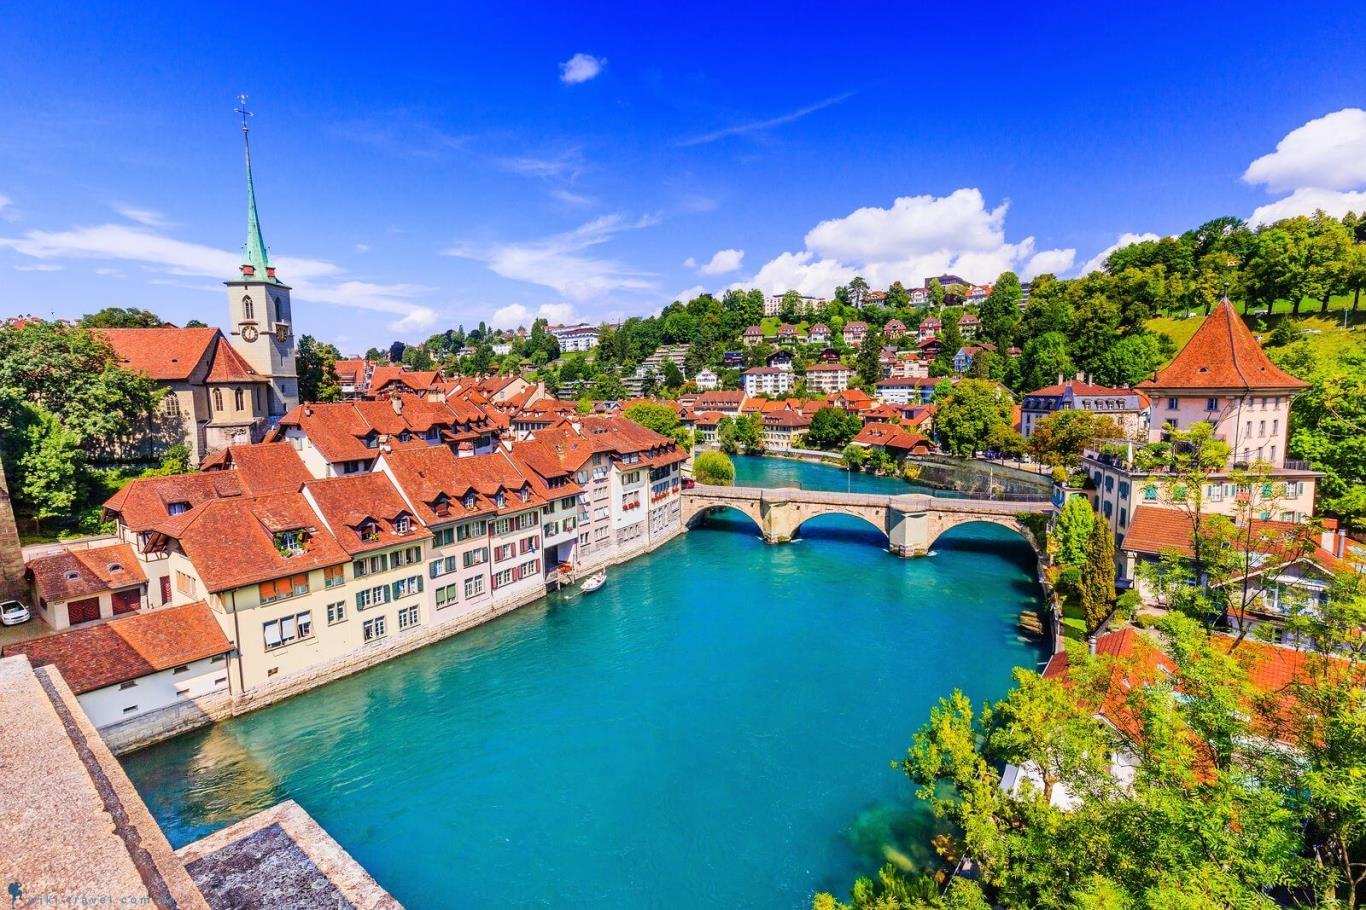 Thủ đô Bern cổ kính giữa lòng Thụy Sĩ | VIETRAVEL - Vietravel